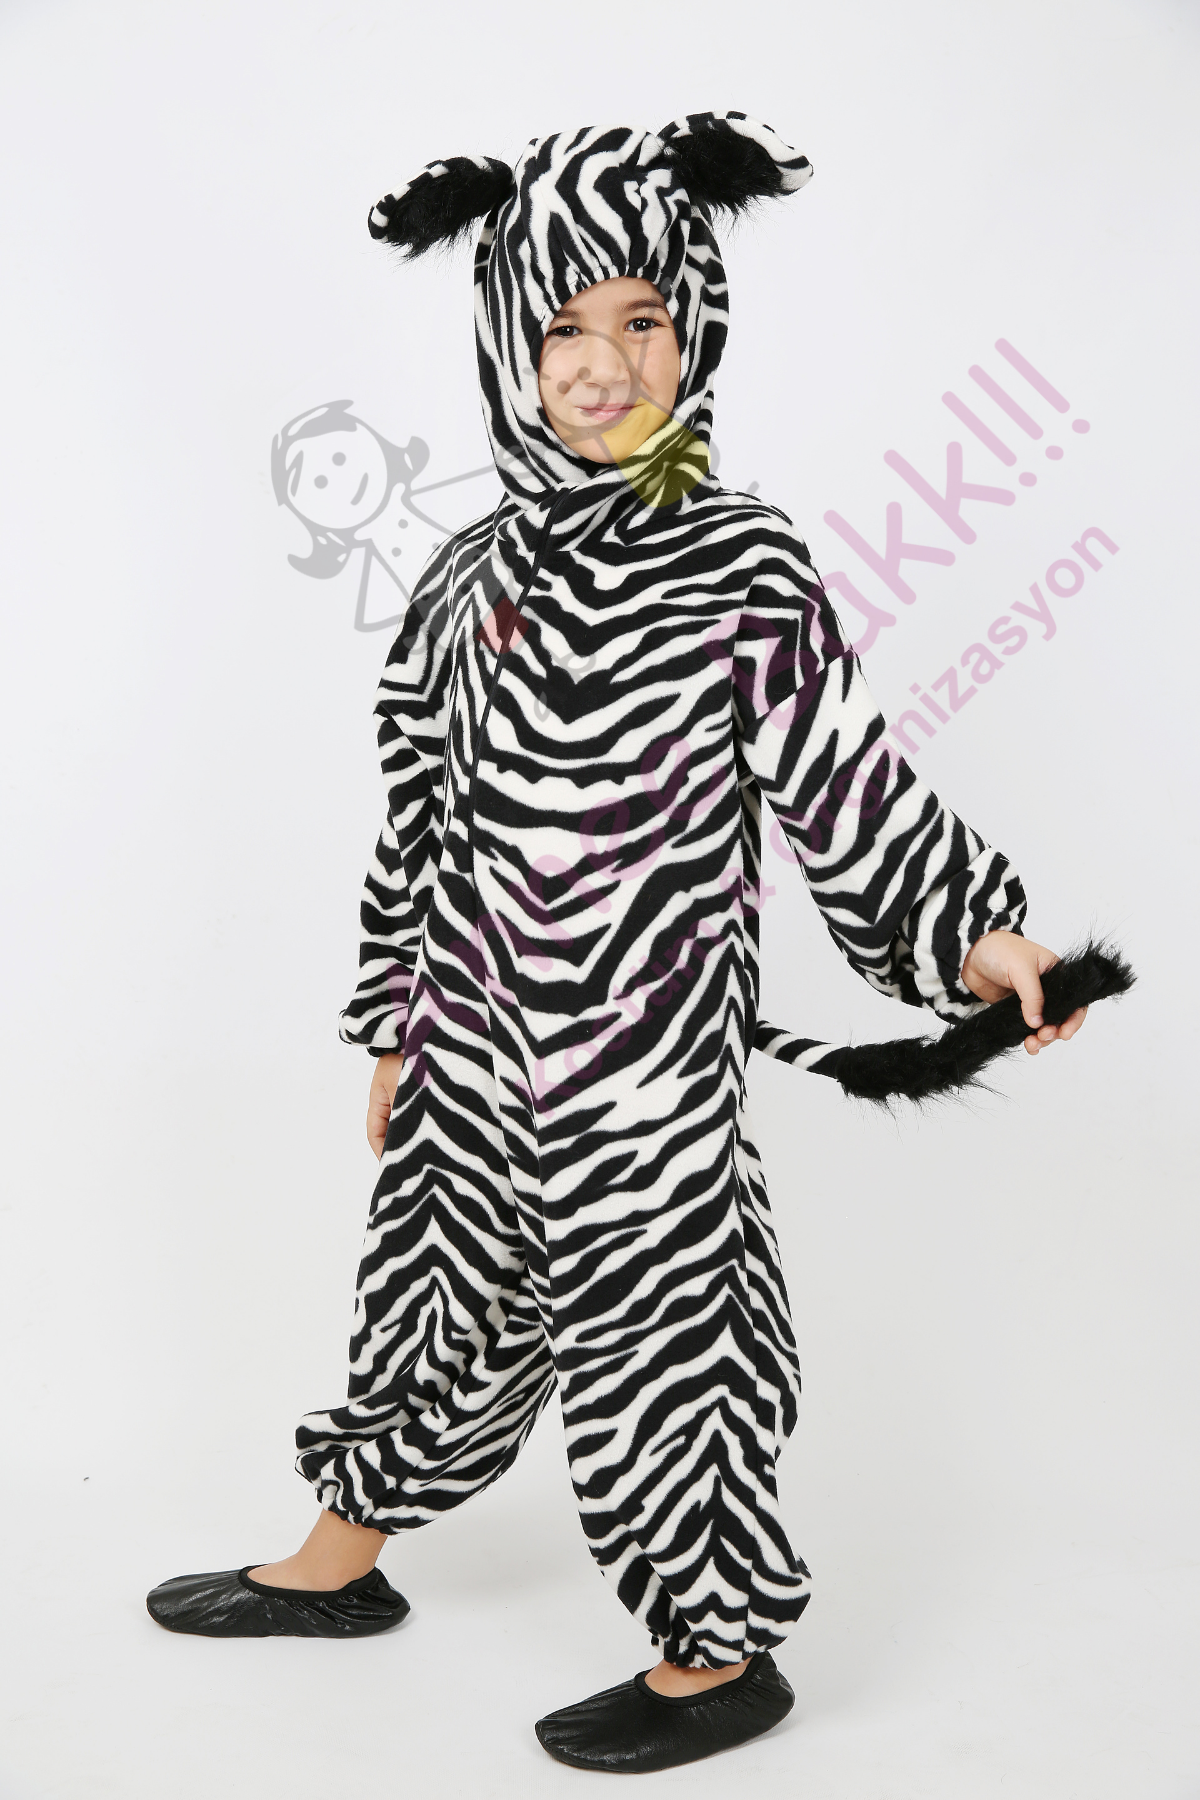 Polar Kumaş Zebra Kostümü, Çocuk Zebra Kostümü, Hızlı Kargo